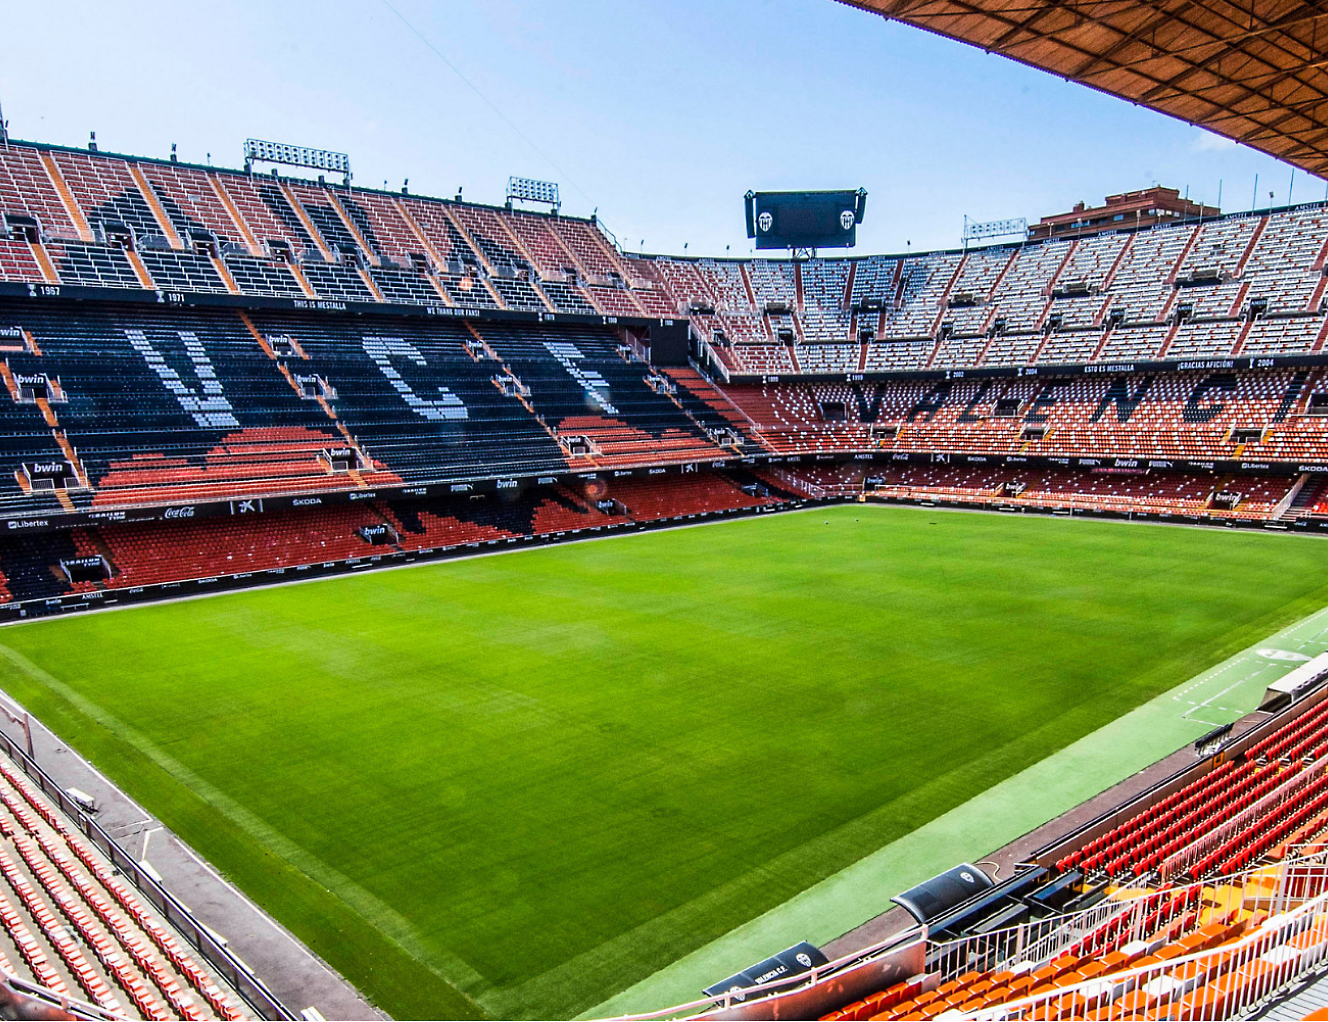 Das Innere eines Fußballstadions mit einem orangefarbenen Spielfeld.